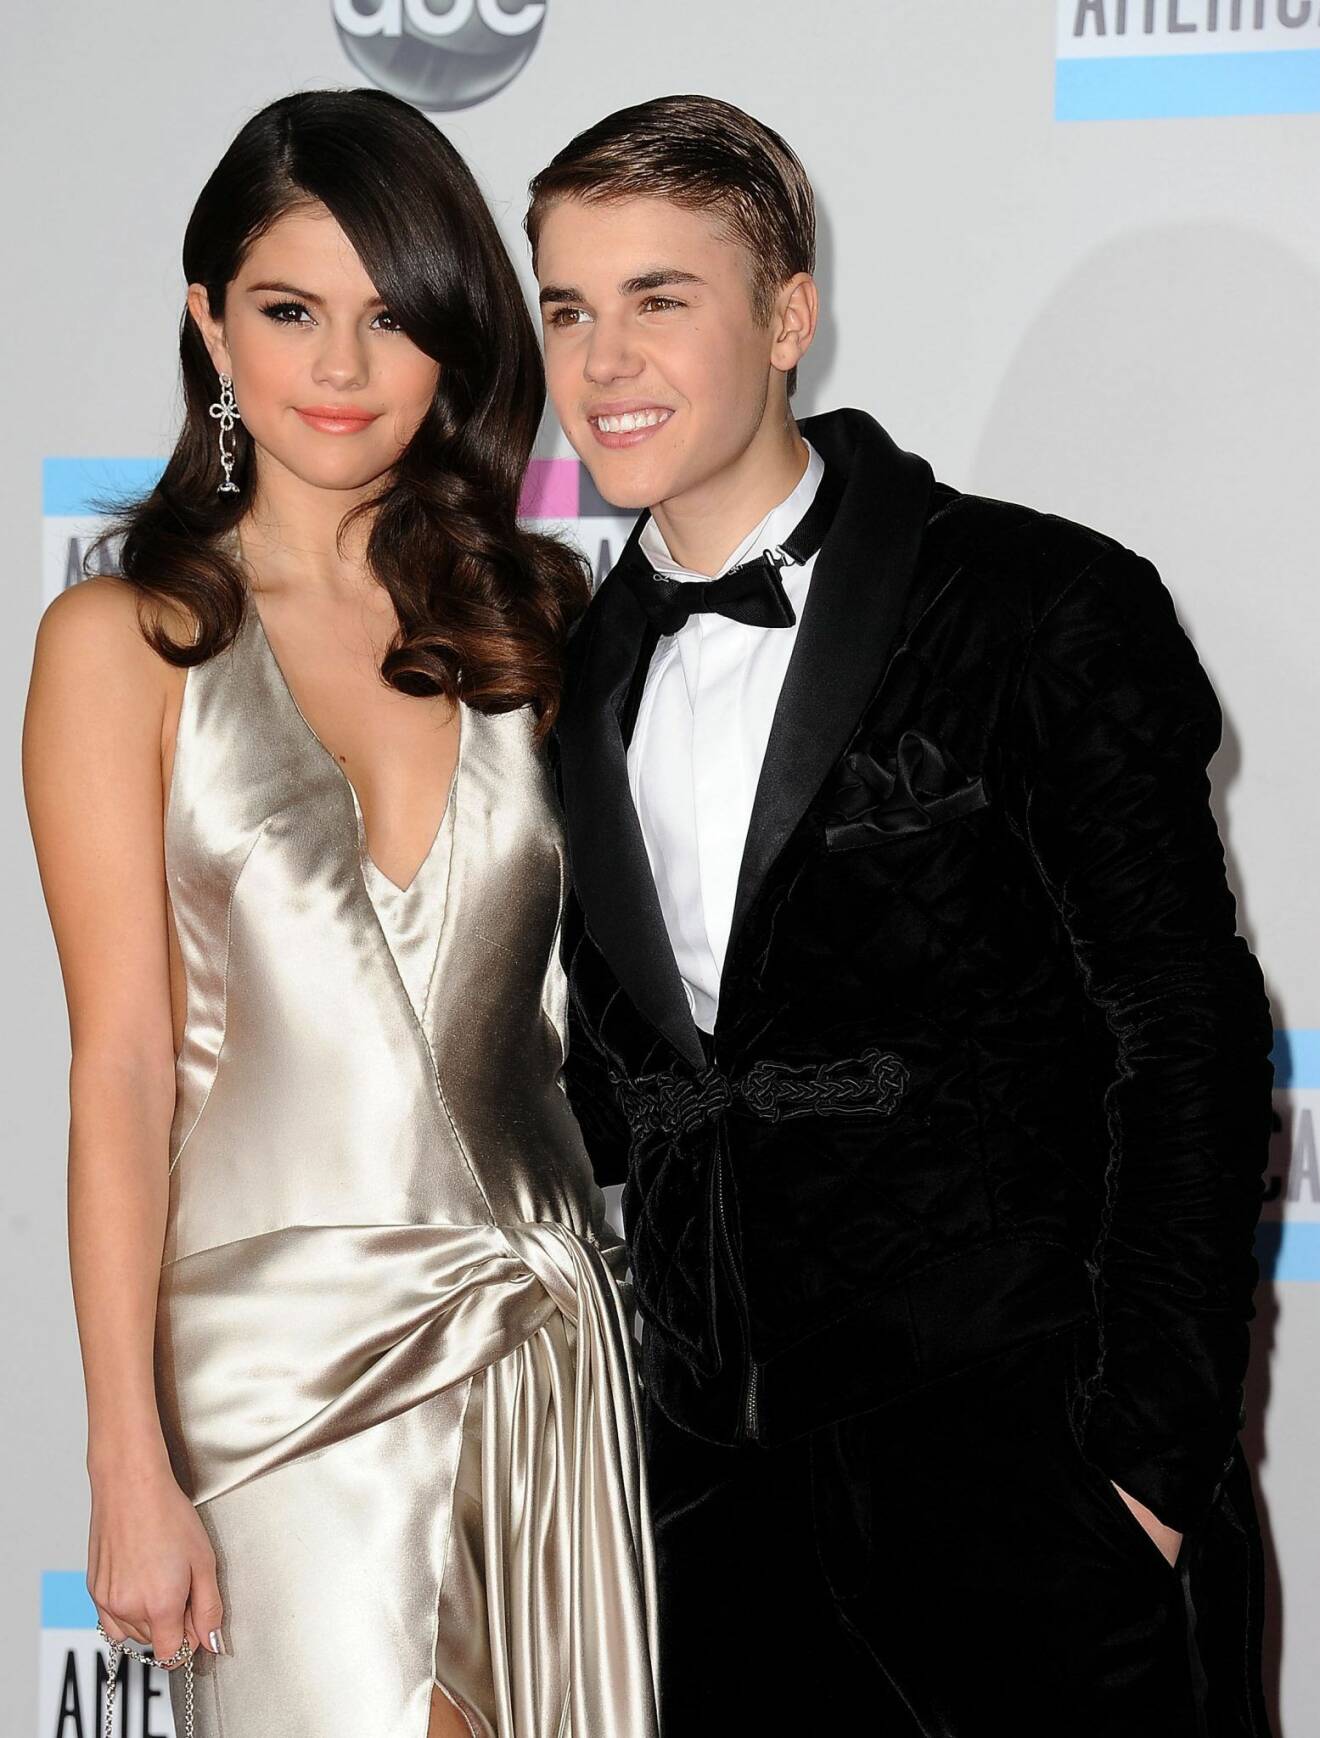 Justin Bieber i svart kostym och Selena Gomez i guldig klänning